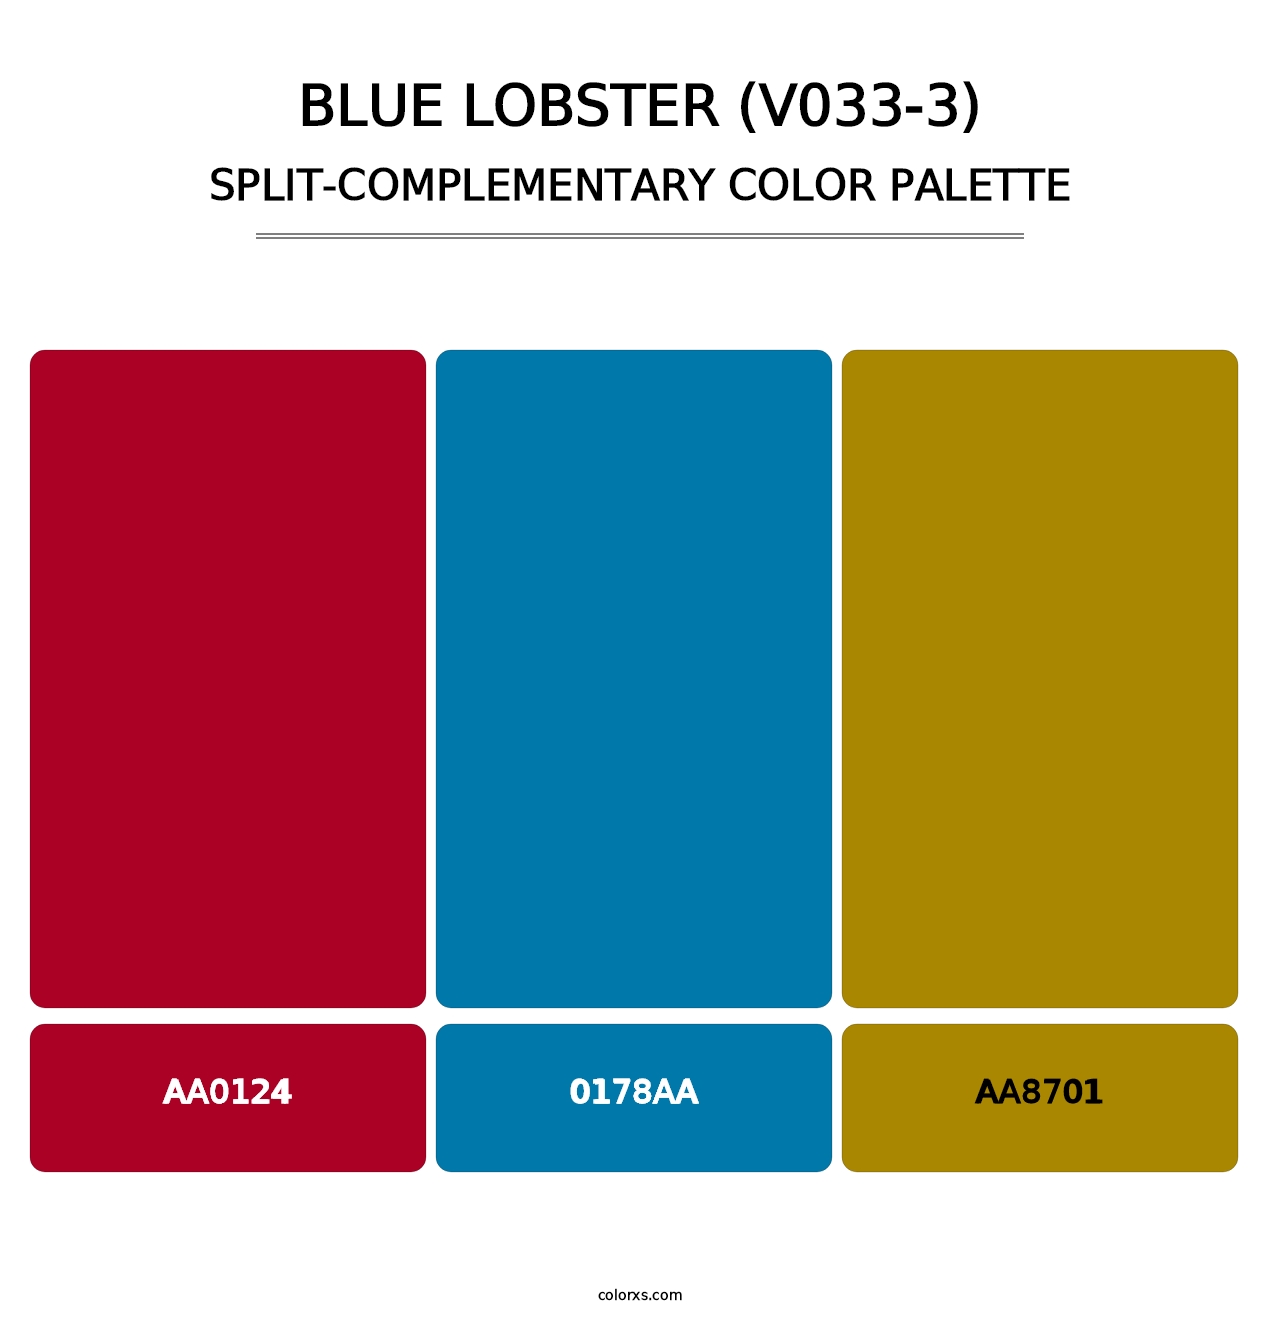 Blue Lobster (V033-3) - Split-Complementary Color Palette